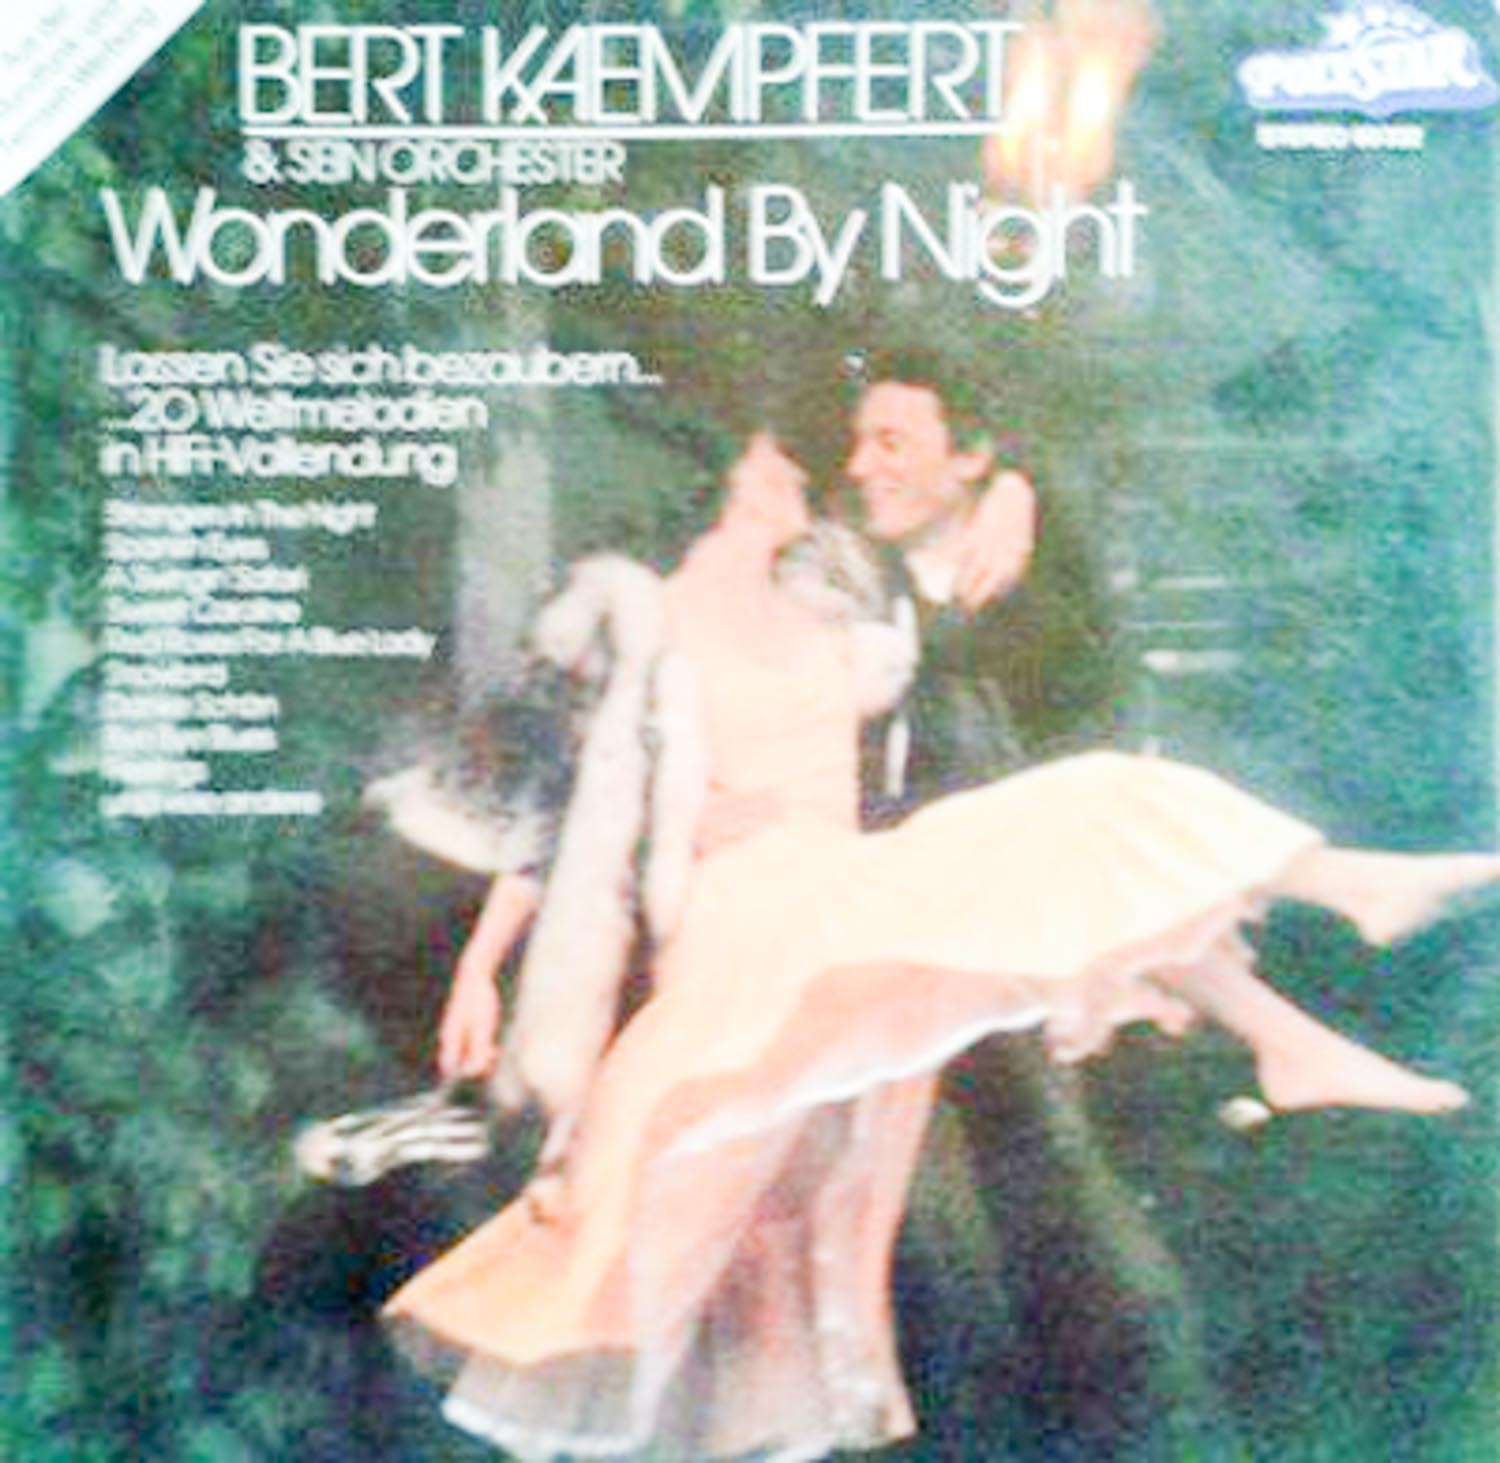 Bert Kaempfert & sein Orchester  Wonderland by Night. 20 Weltmelodien in HiFi-Vollendung (27 3243)  *LP 12'' (Vinyl)*. 